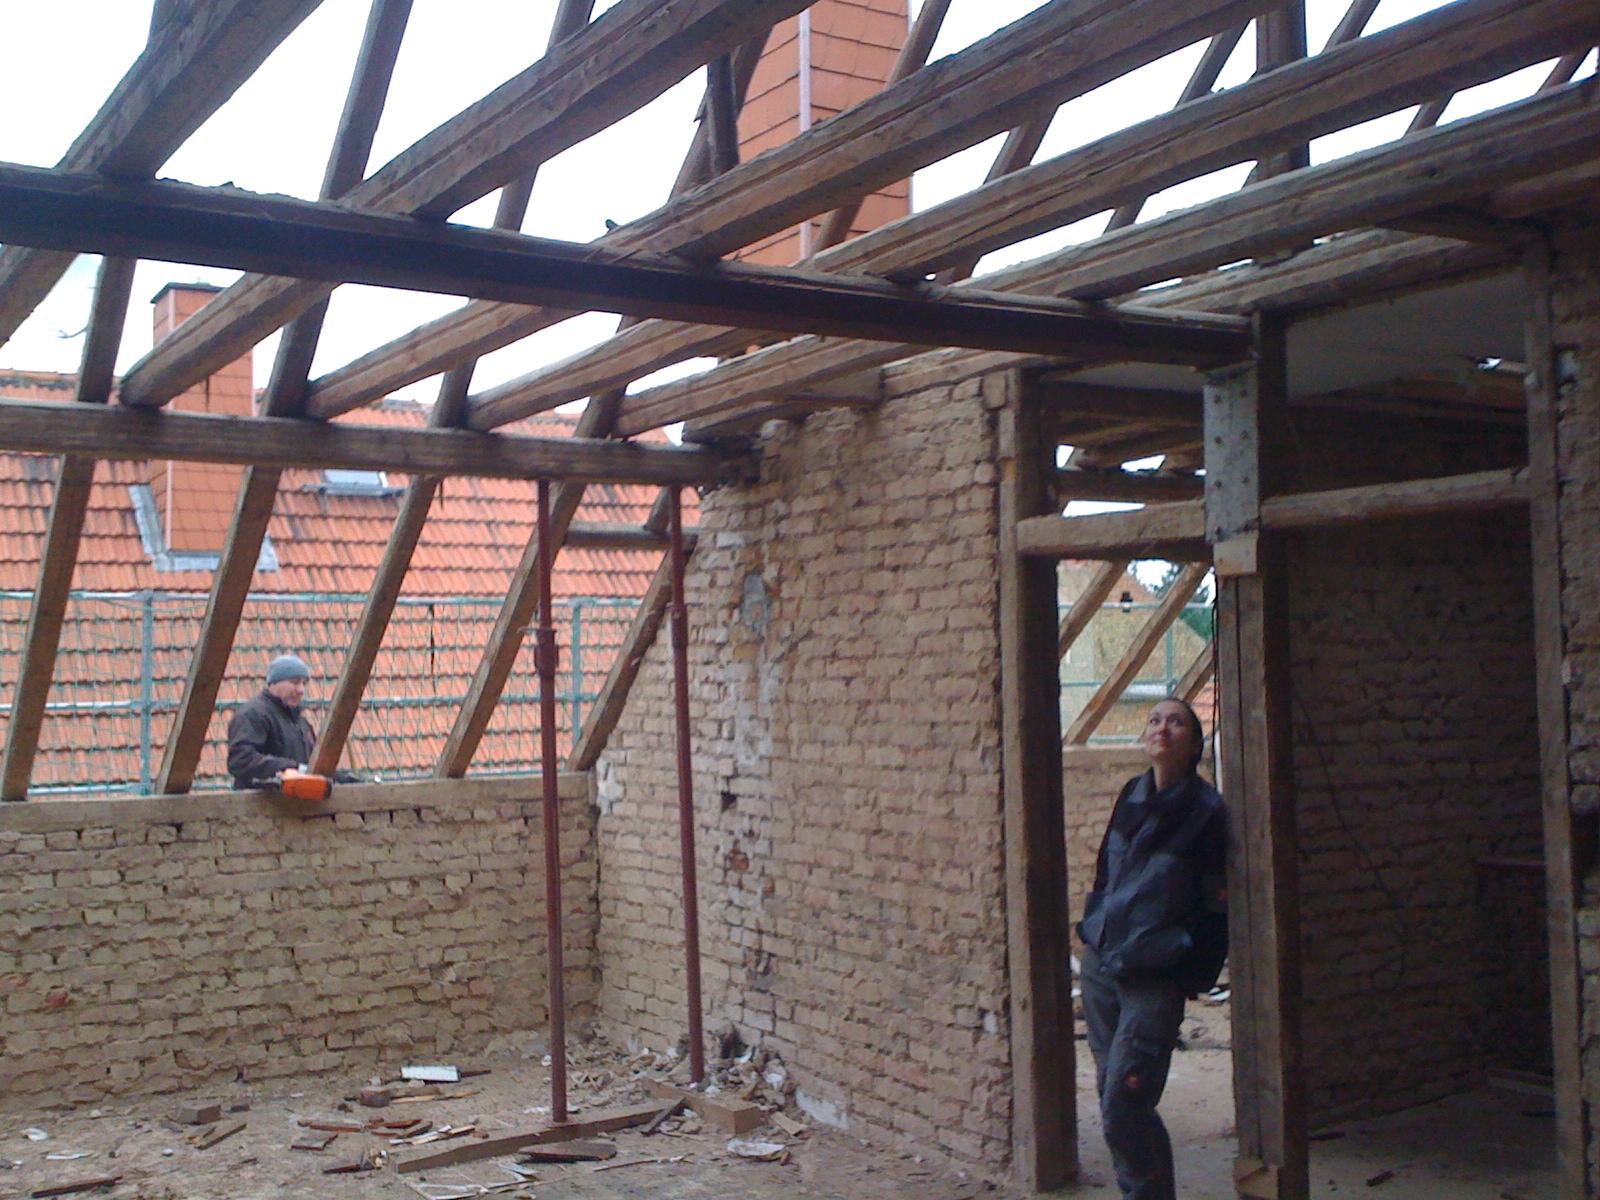 Während des Umbaus #dachausbau #kamin #wohnzimmer #loft #galerie ©Tatjana Adelt